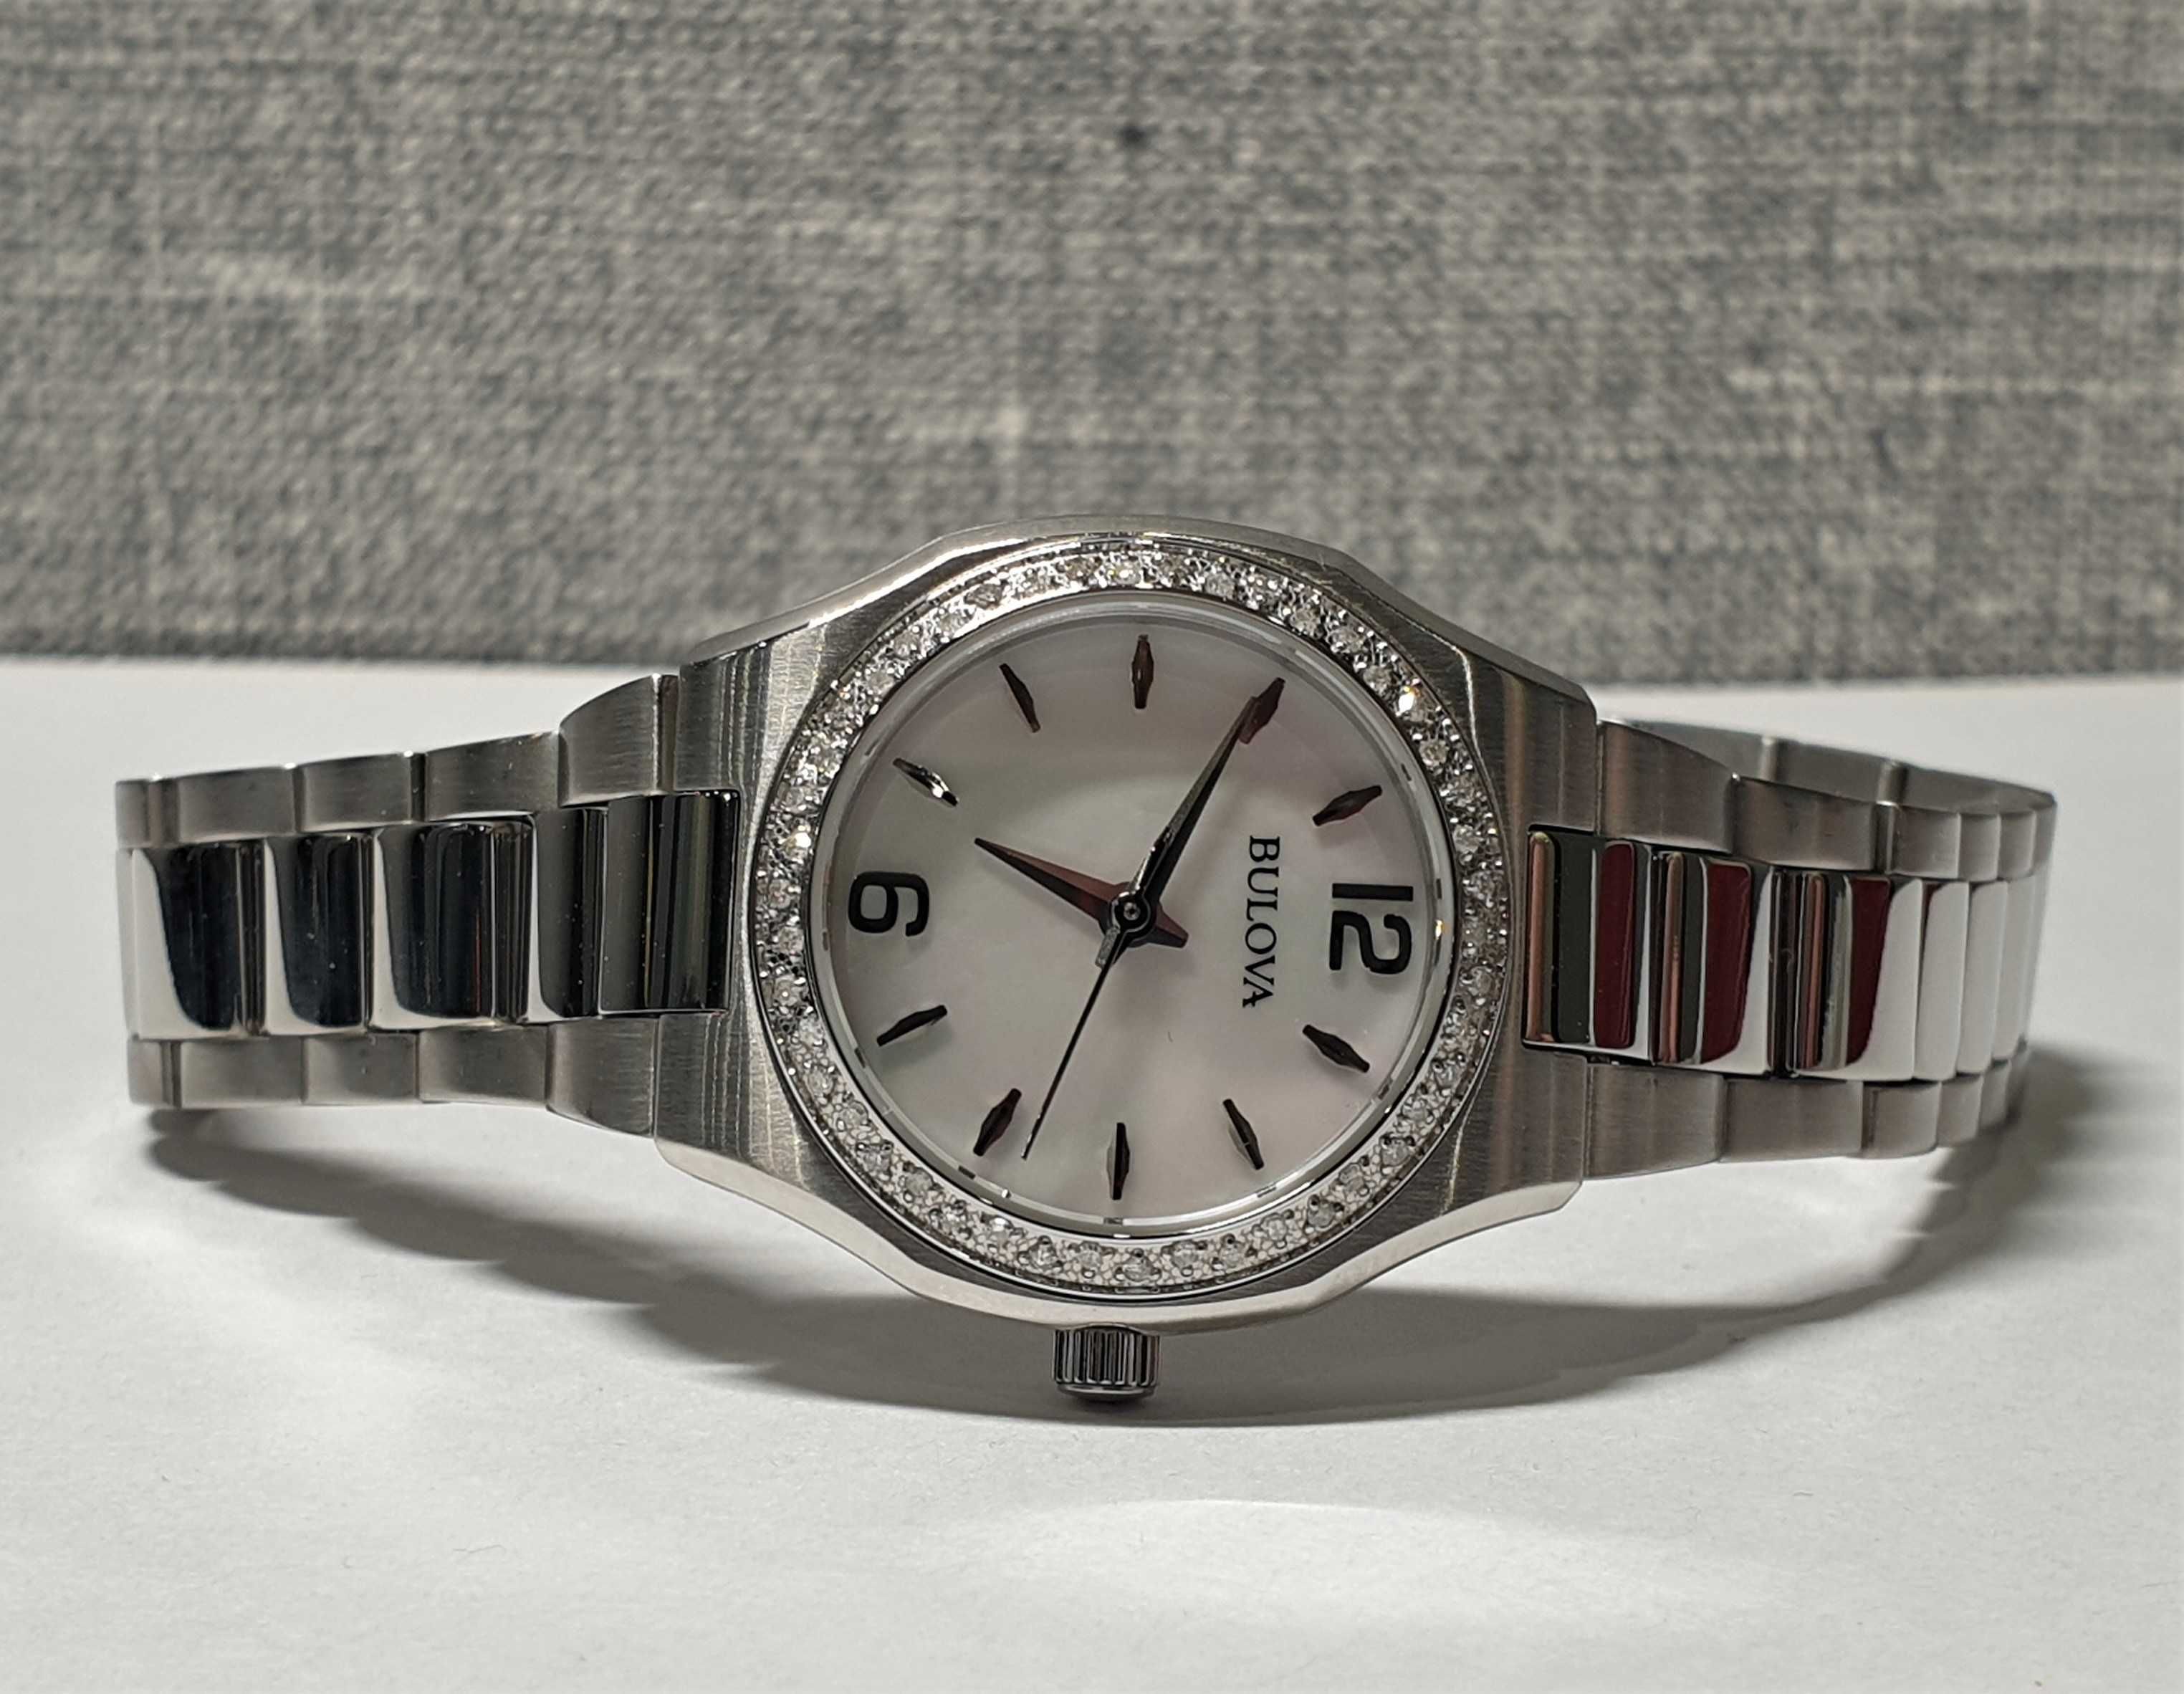 Жіночий годинник часы Bulova 96R199 Sapphire з діамантами новий